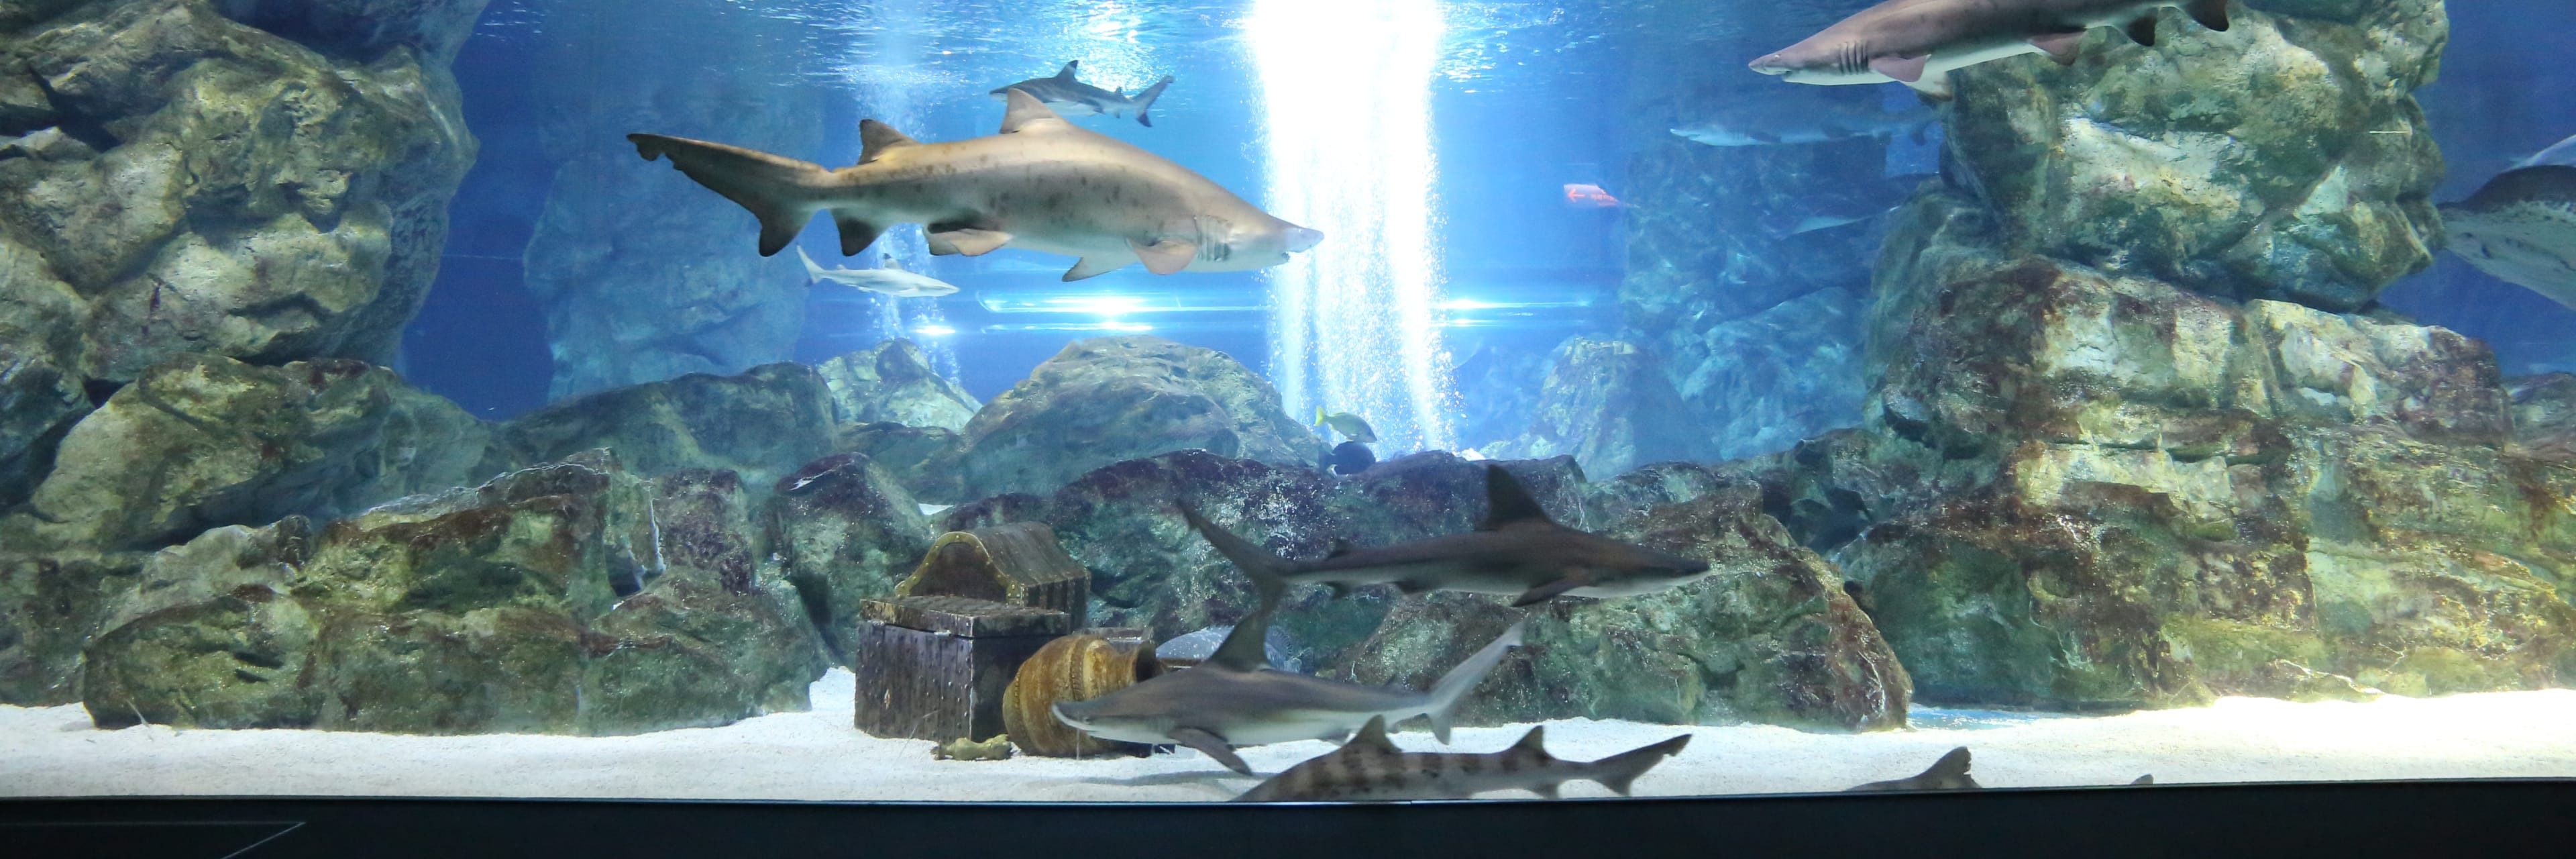 COEX Aquarium